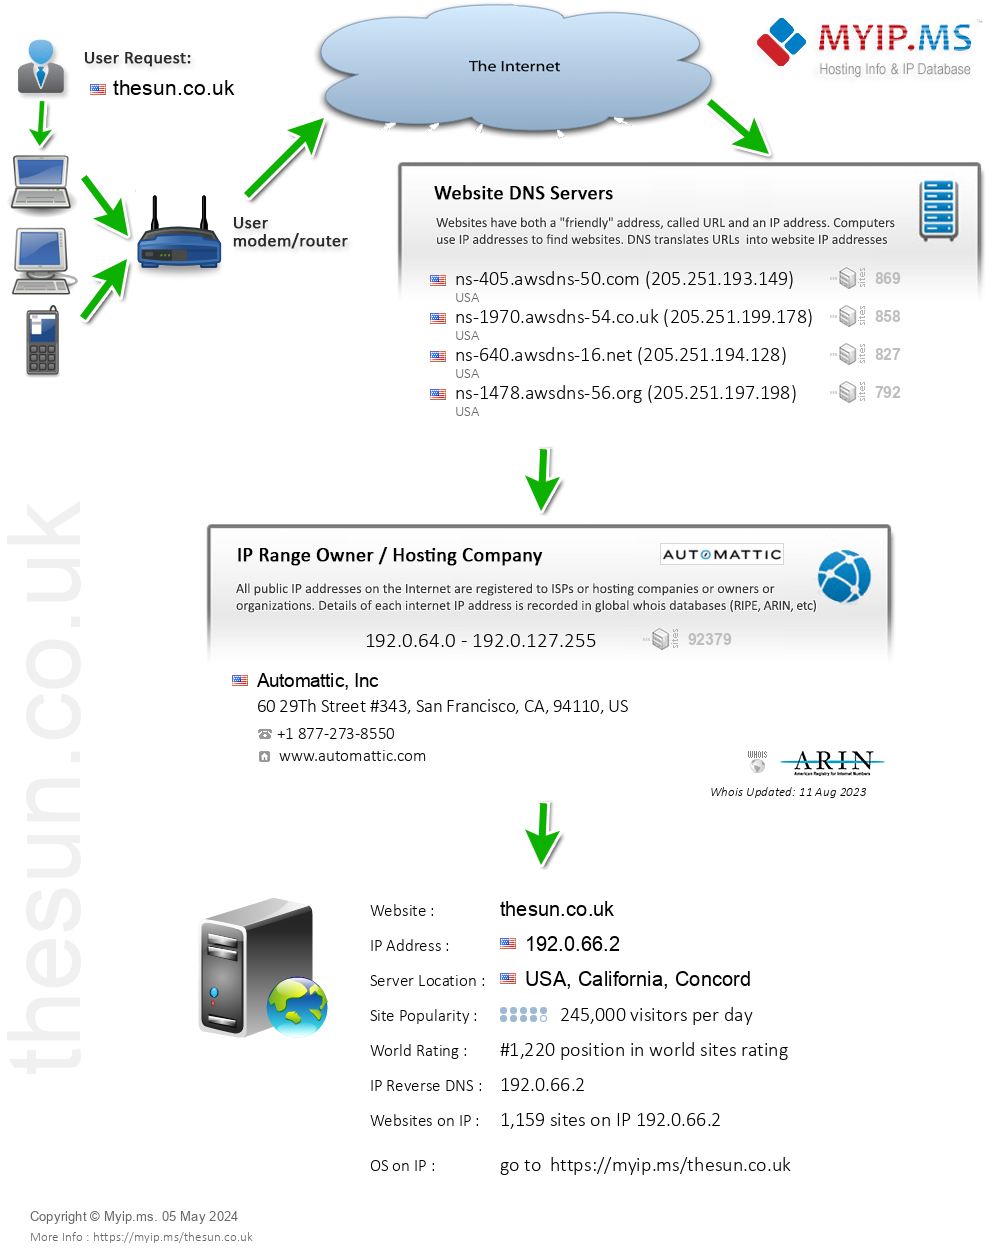 Thesun.co.uk - Website Hosting Visual IP Diagram